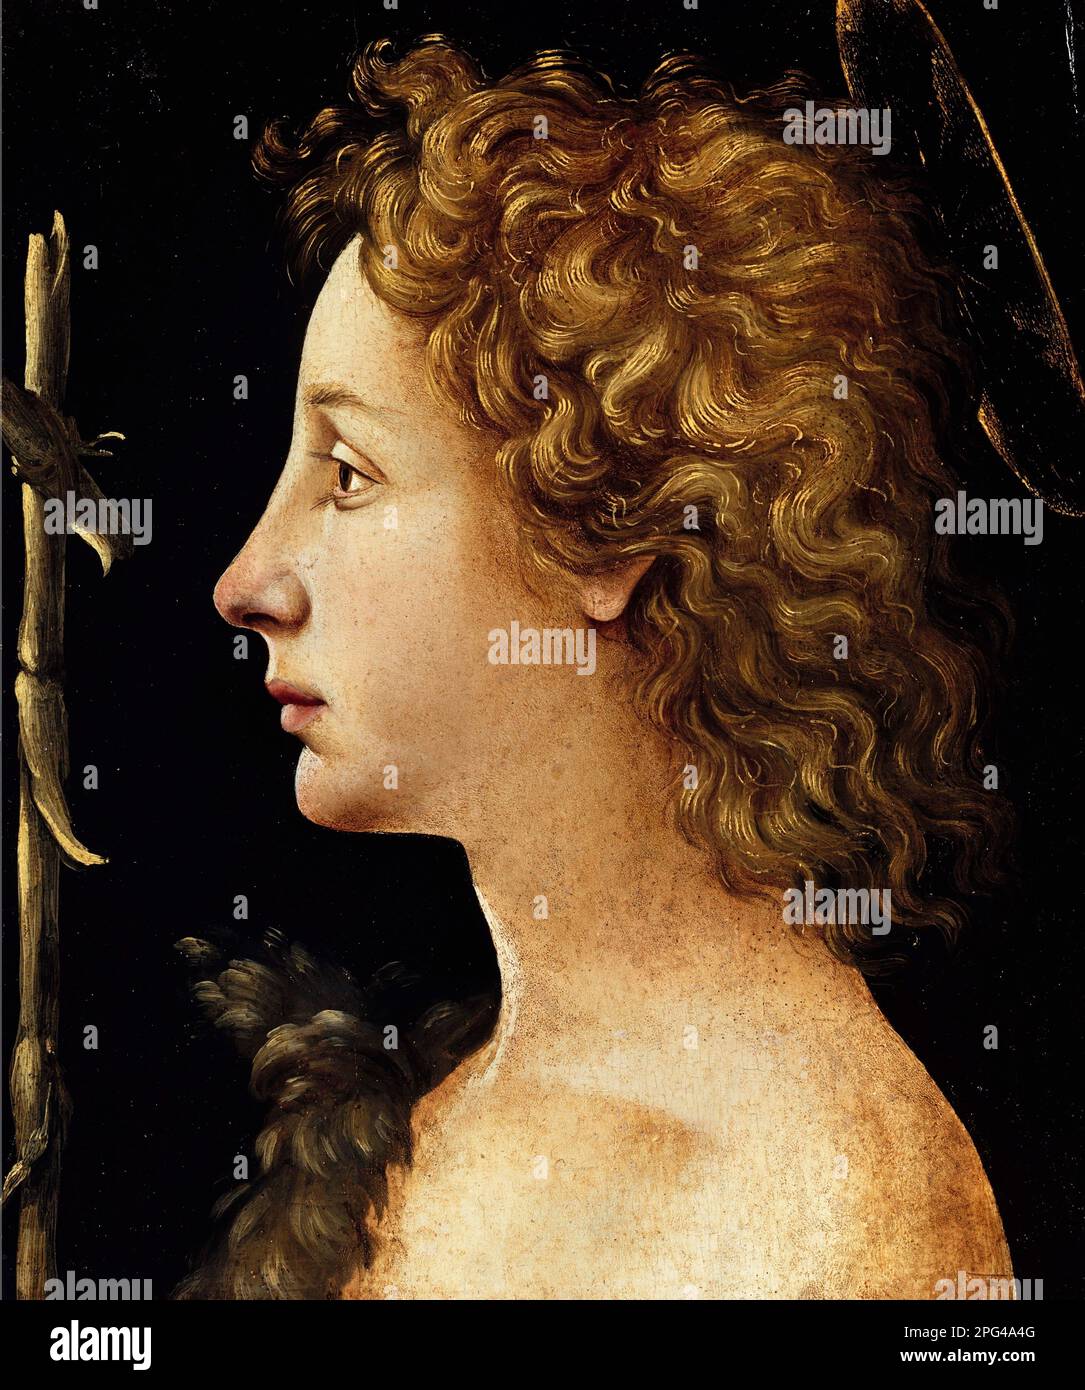 Le Jeune Saint Jean-Baptiste par le peintre italien de la Renaissance, Piero di Cosimo (1462-1522), tempera et huile sur bois, vers 1480-82 Banque D'Images